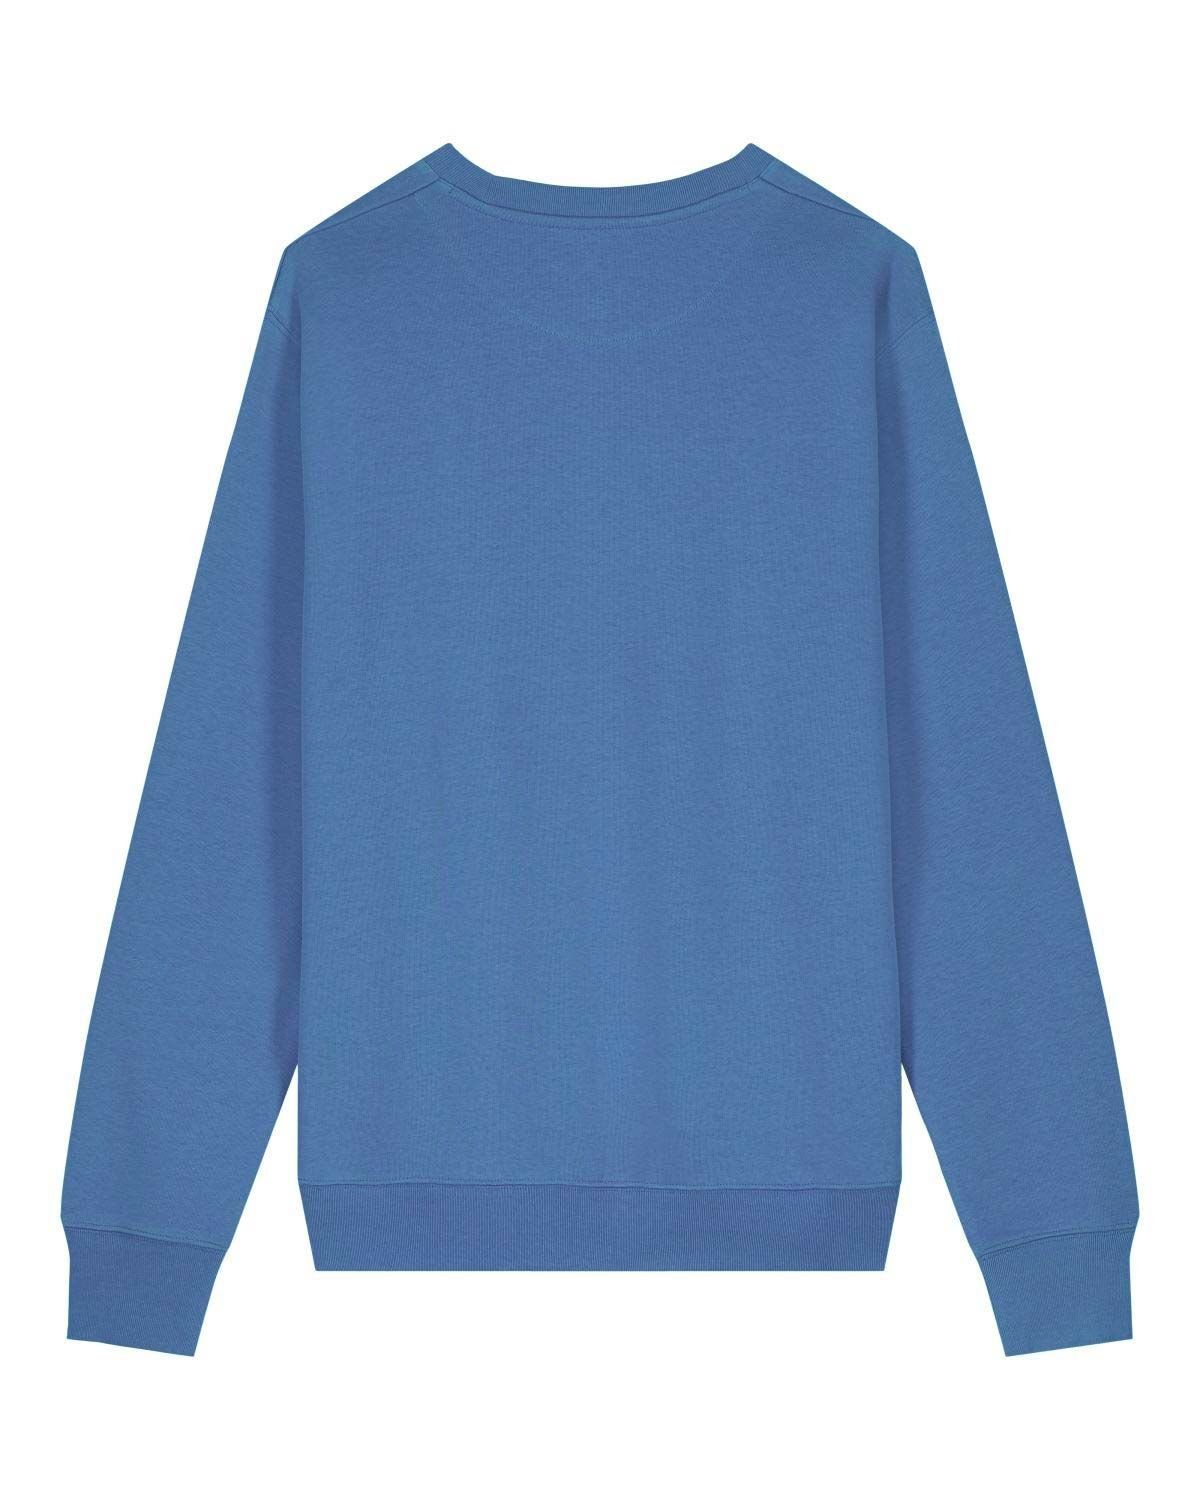 Bright YTWOO Blue Sweatshirt USW.08.BrB.2XL